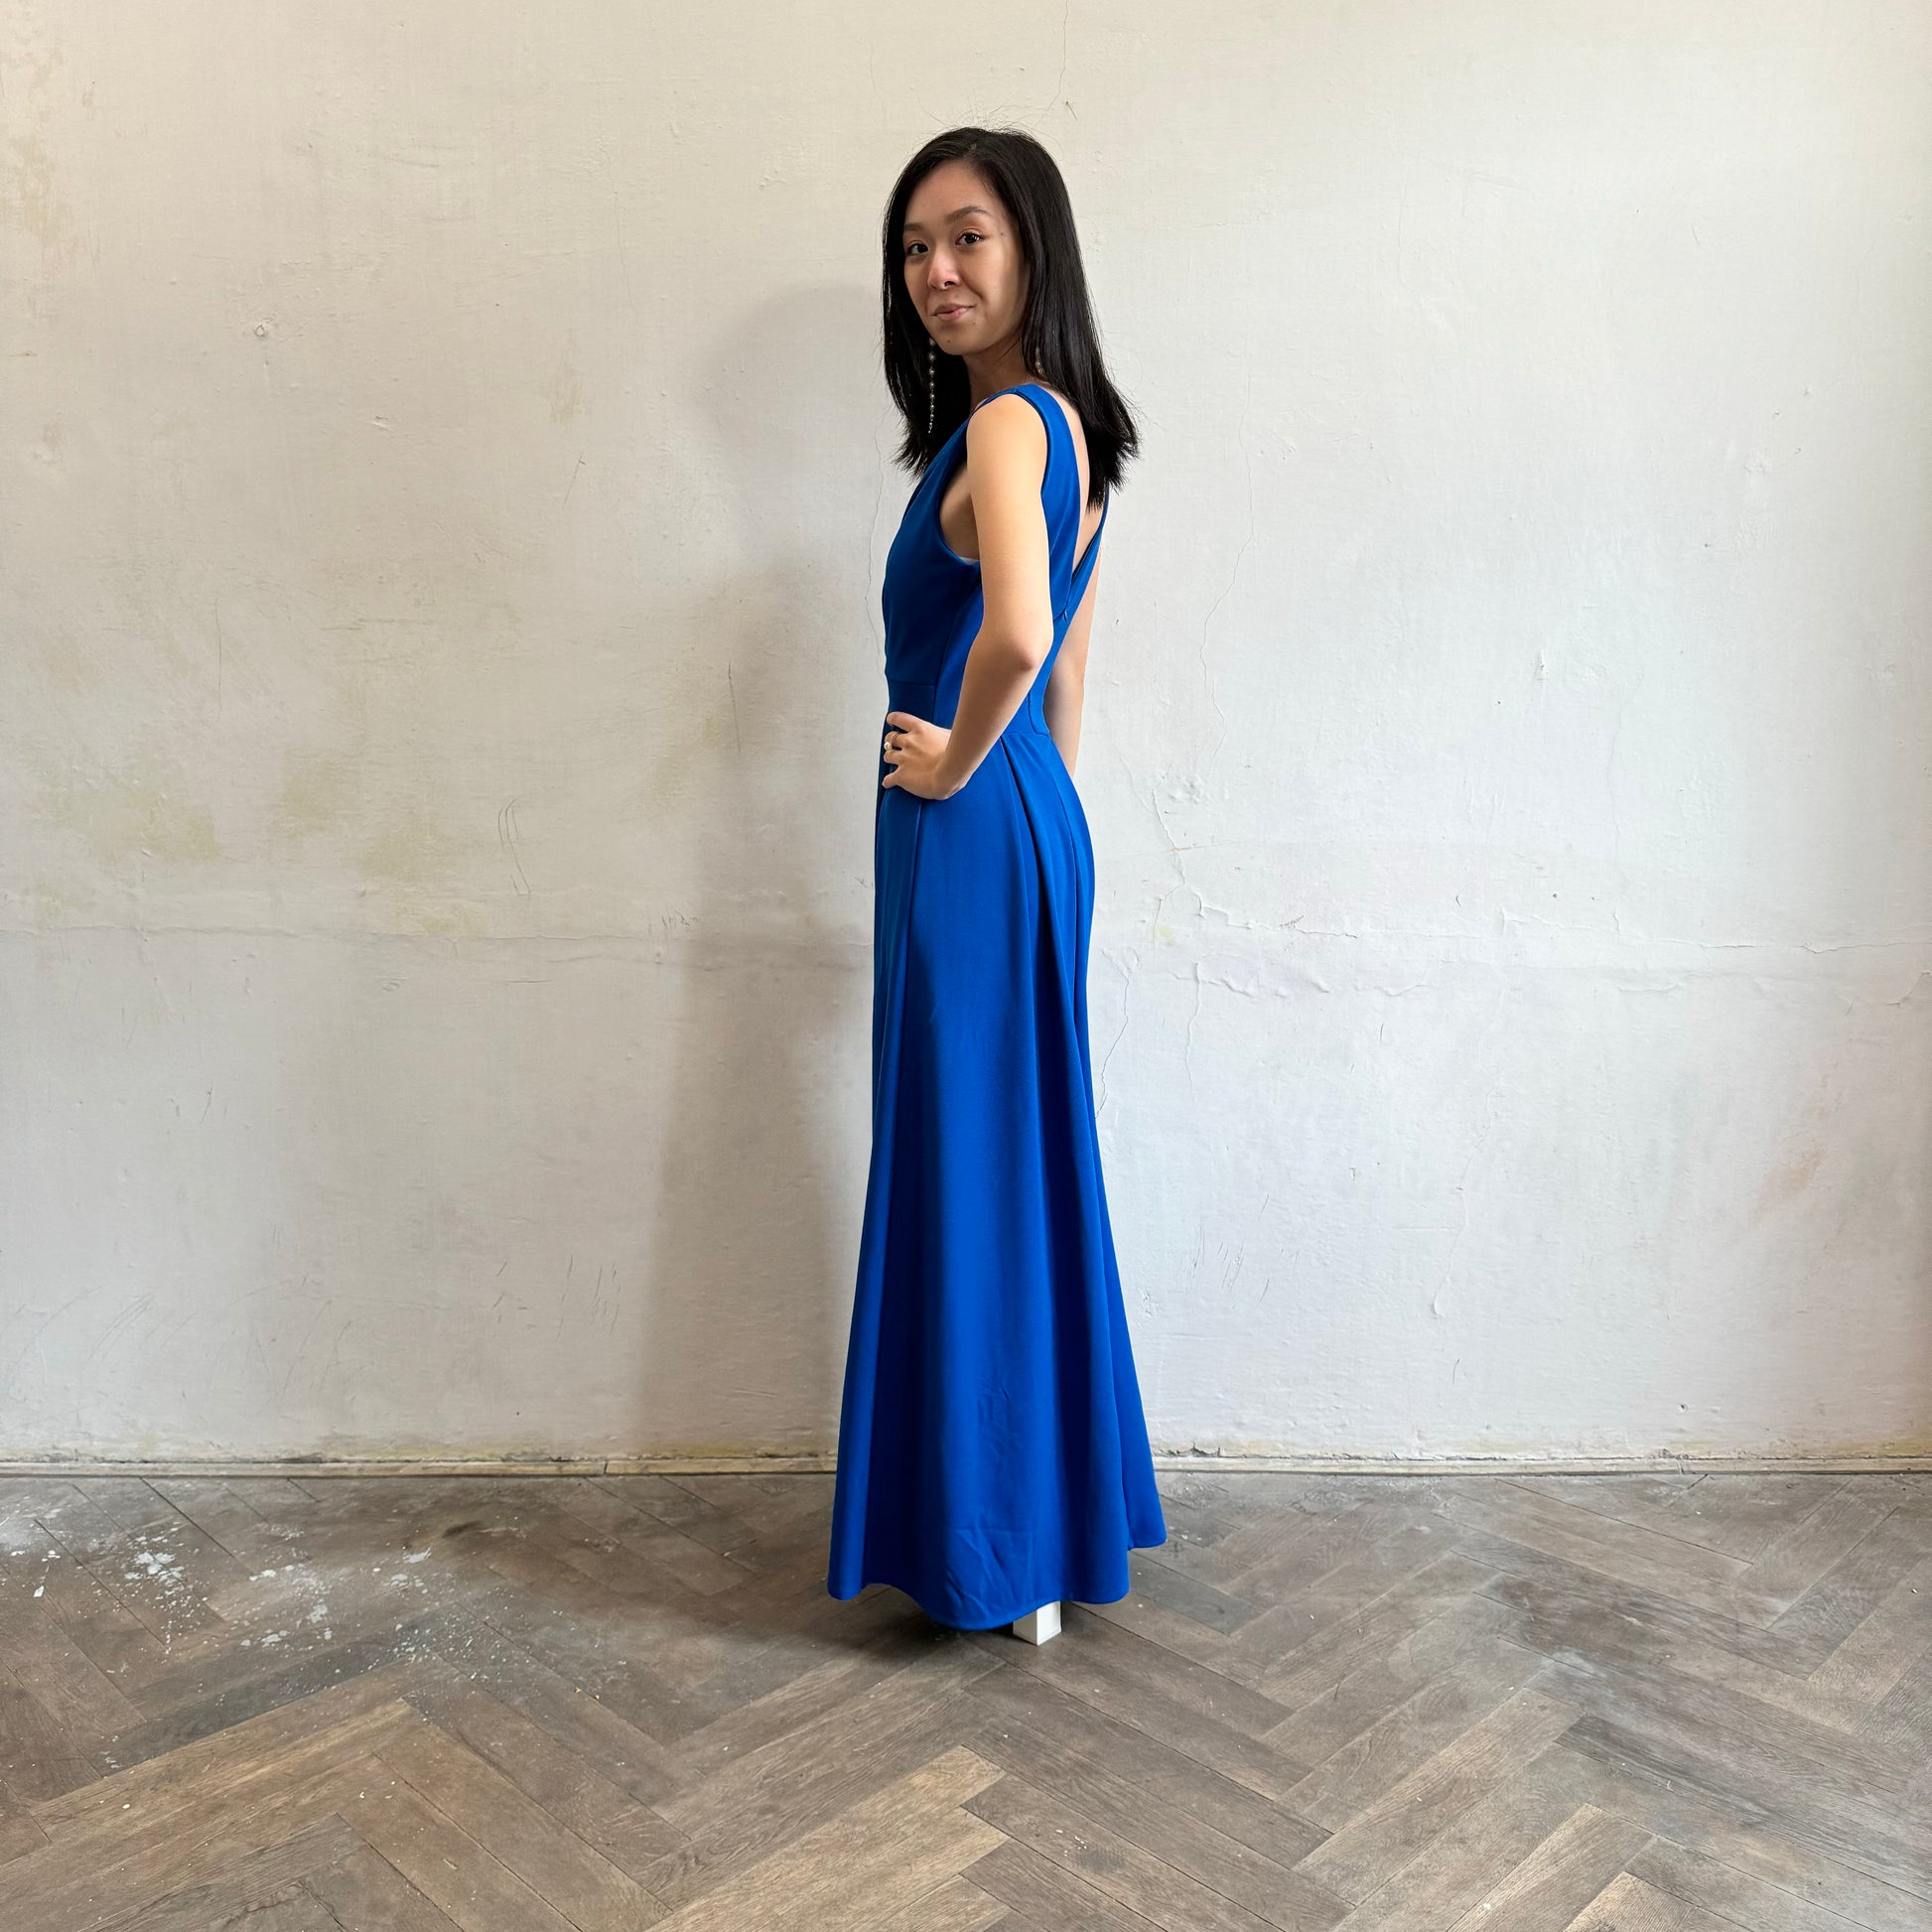 Modelka asijského původu pózující z boku oblečená ve královsky modrých společenských šatech s rozparkem